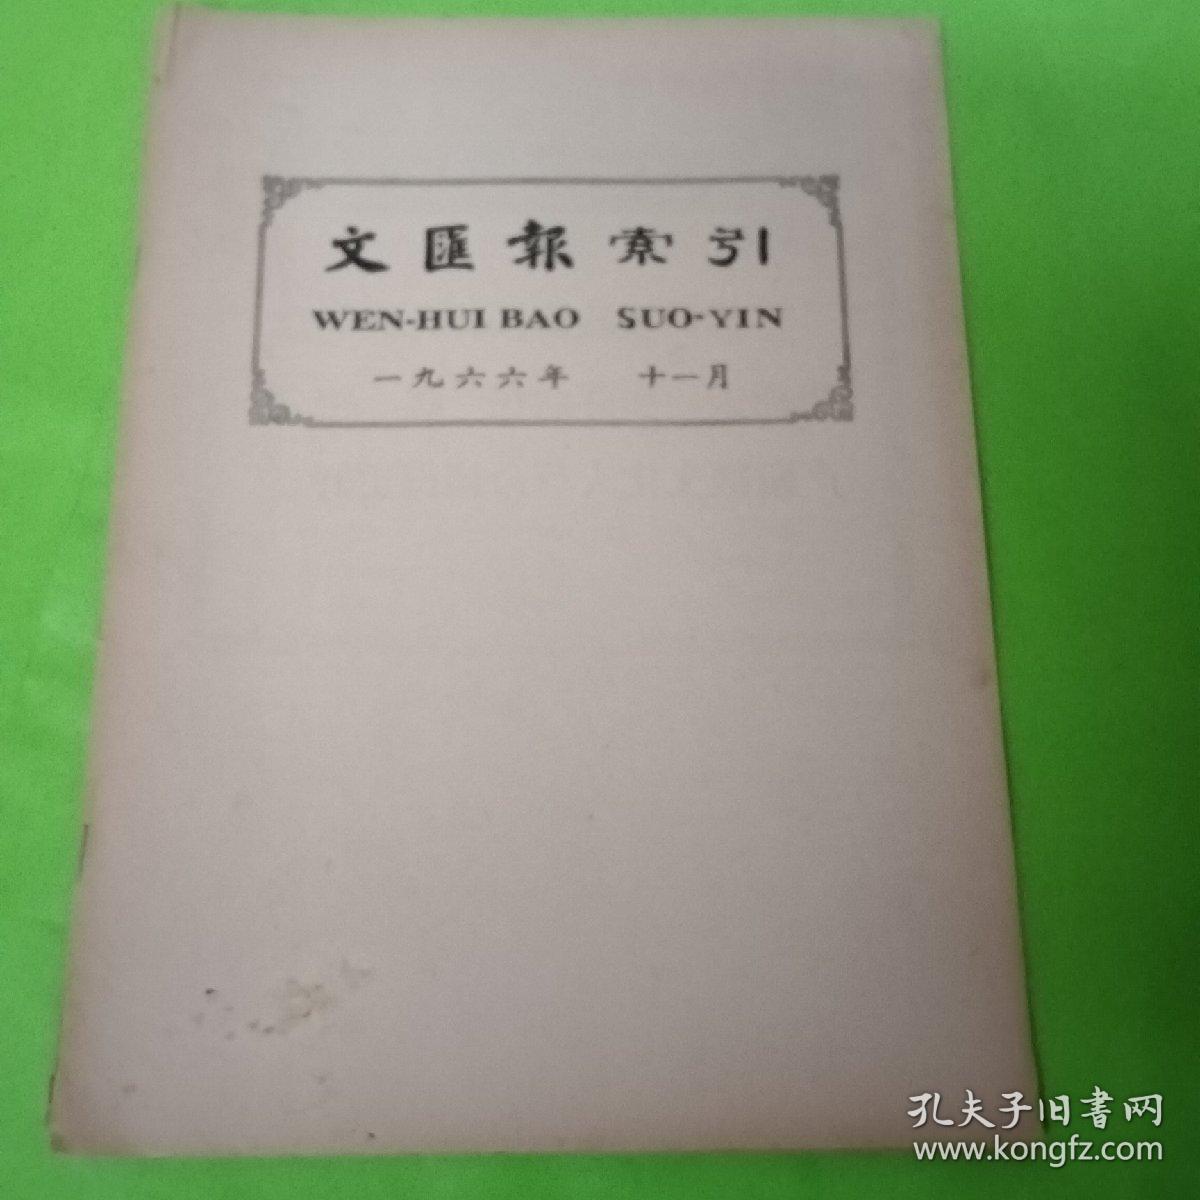 文汇报索引 1966.11